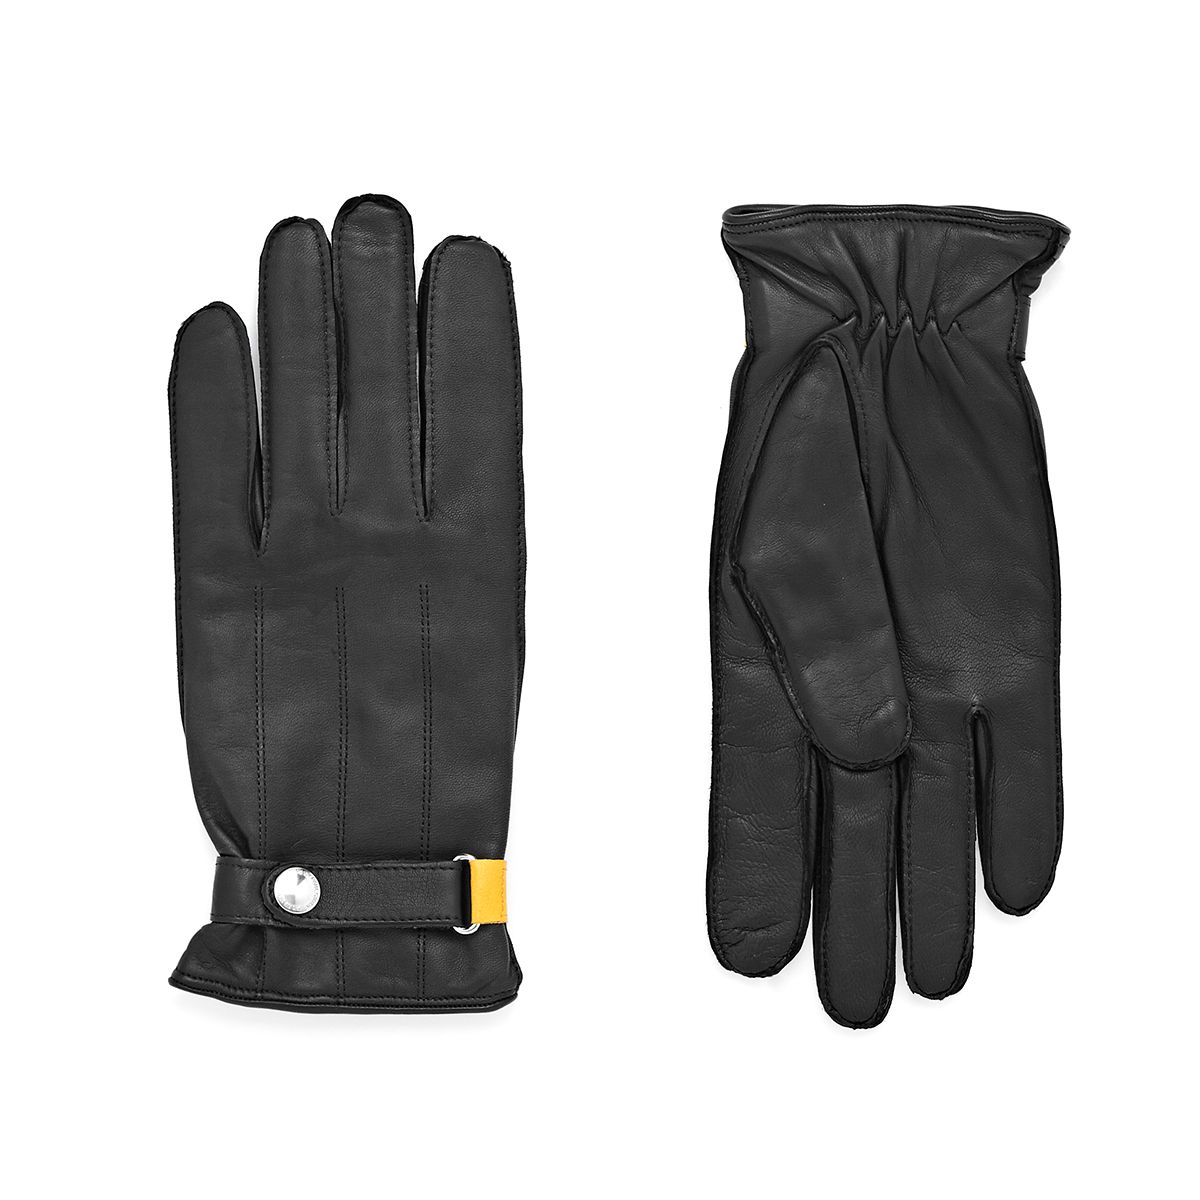 Slap Entry Gloves